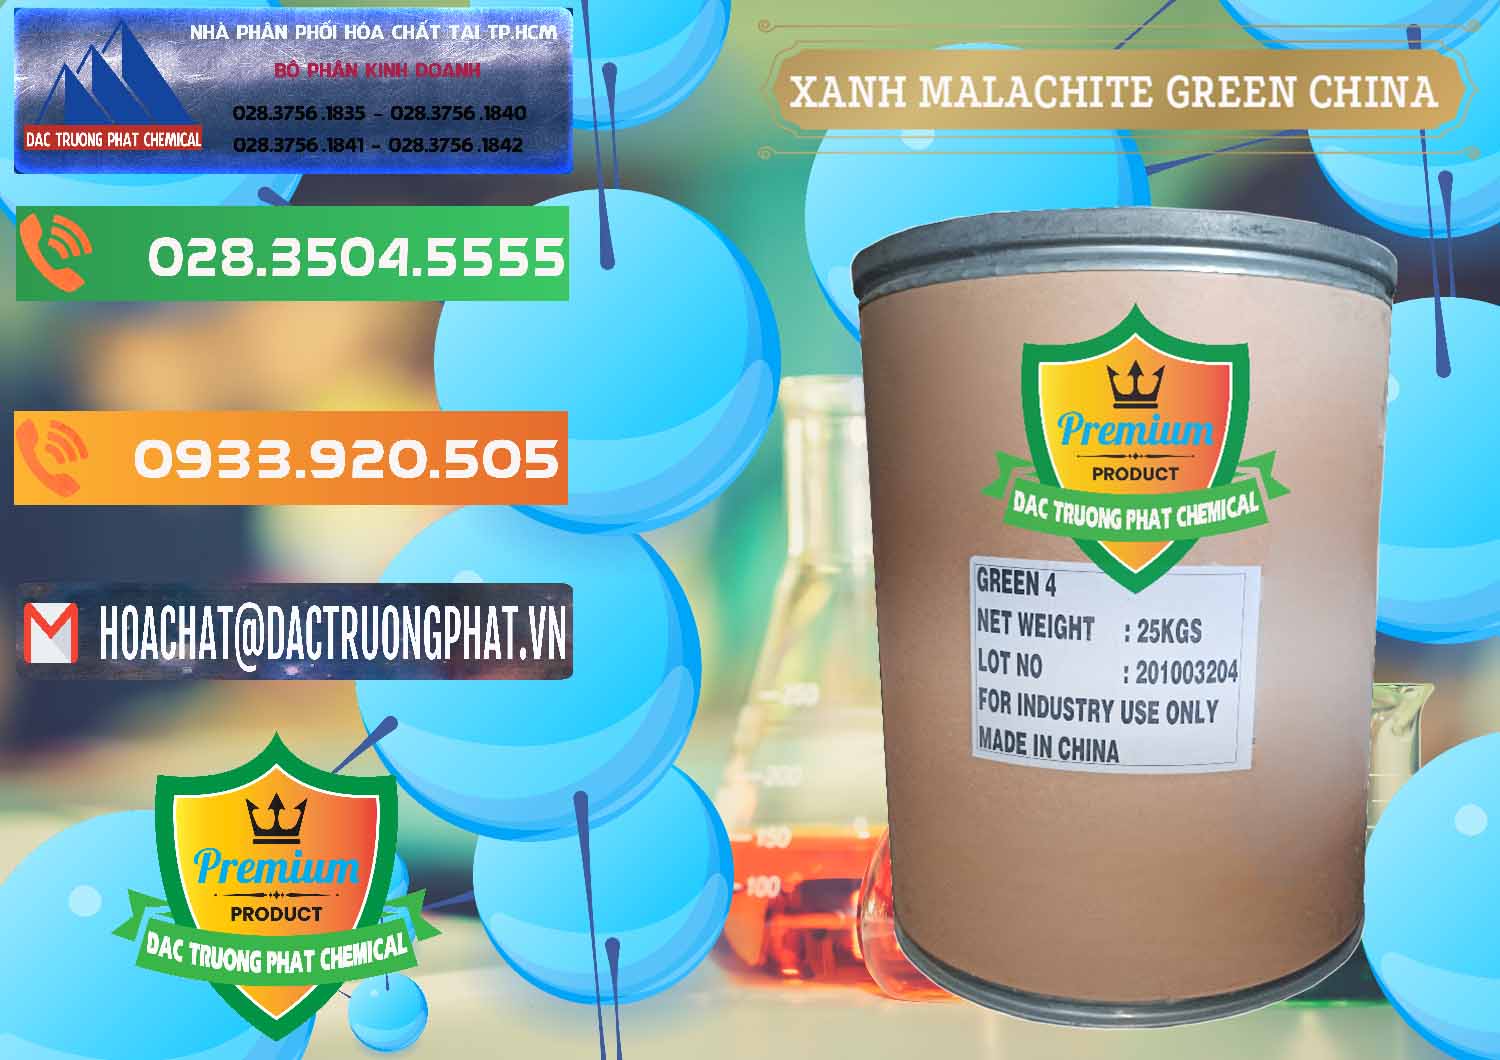 Đơn vị chuyên kinh doanh và bán Xanh Malachite Green Trung Quốc China - 0325 - Chuyên phân phối _ kinh doanh hóa chất tại TP.HCM - hoachatxulynuoc.com.vn